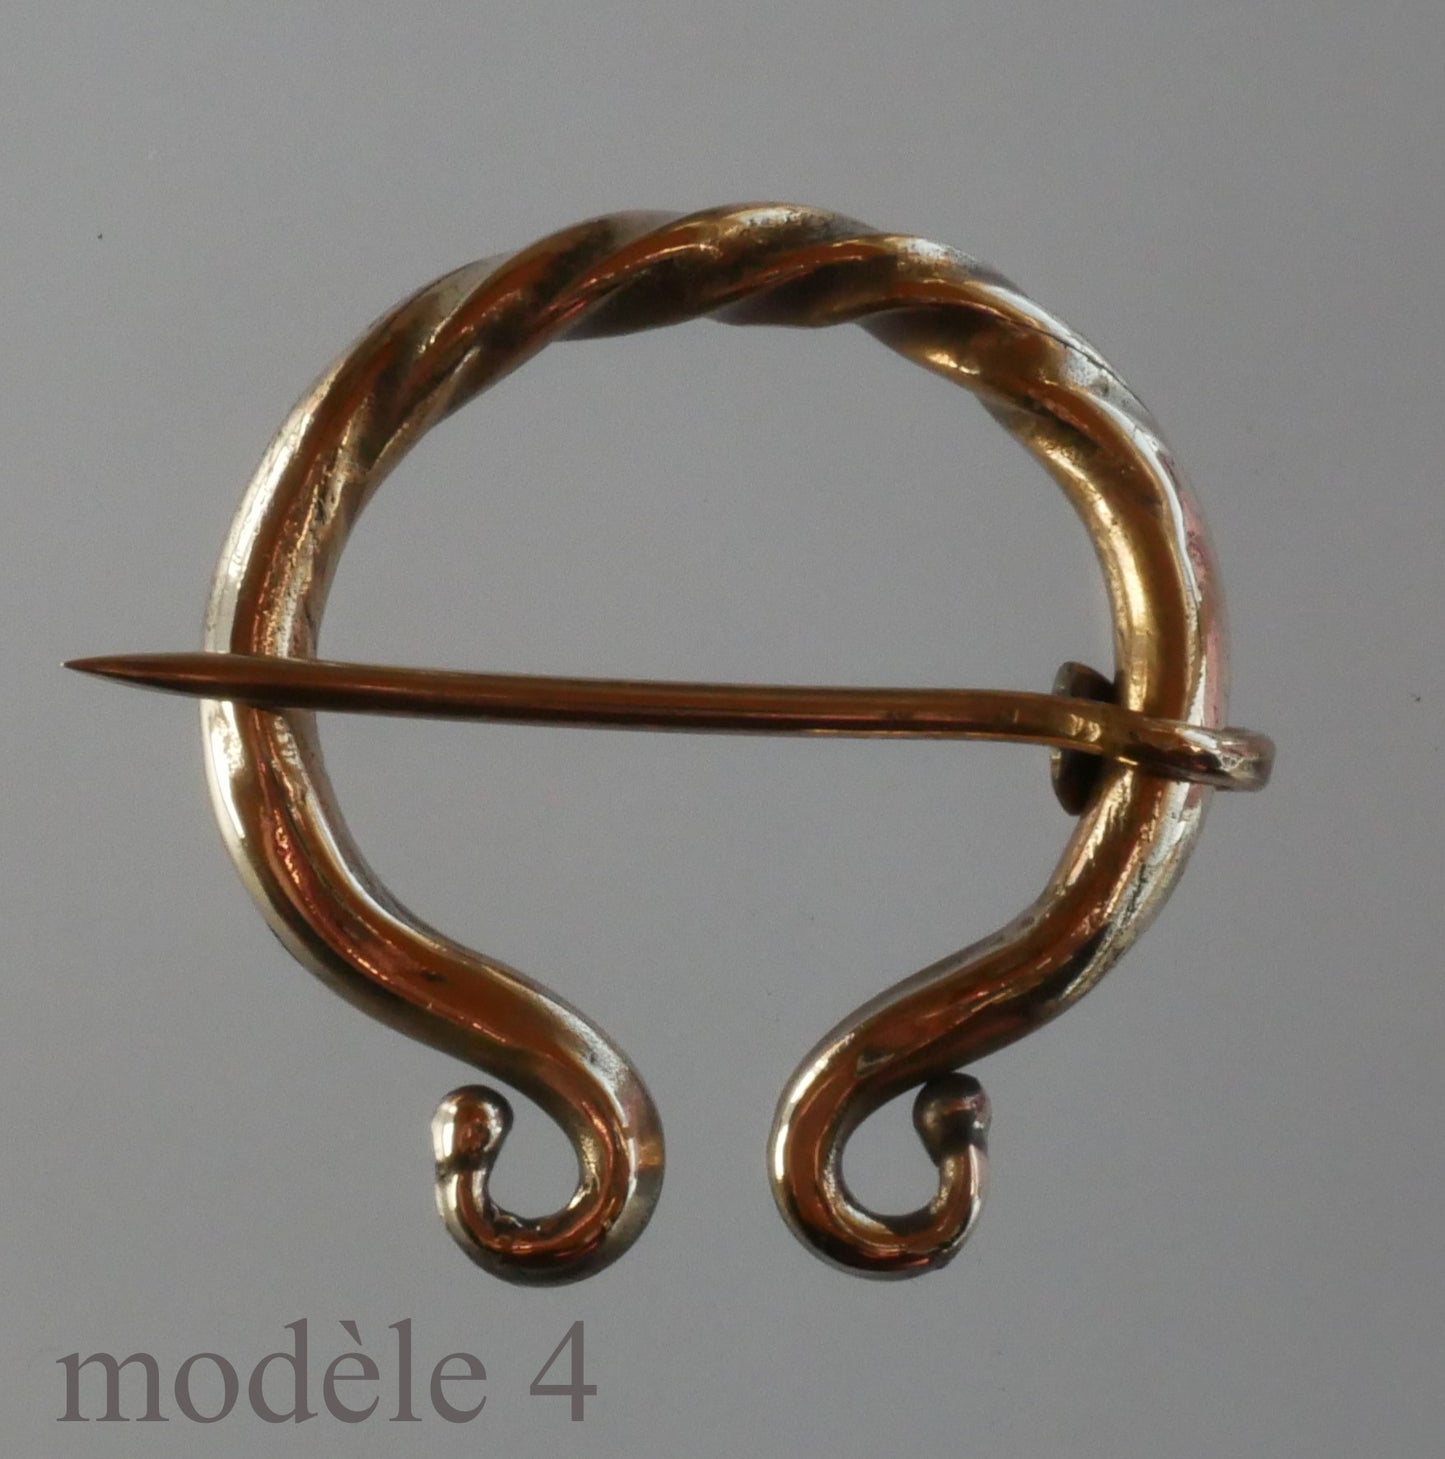 carved bronze fibula